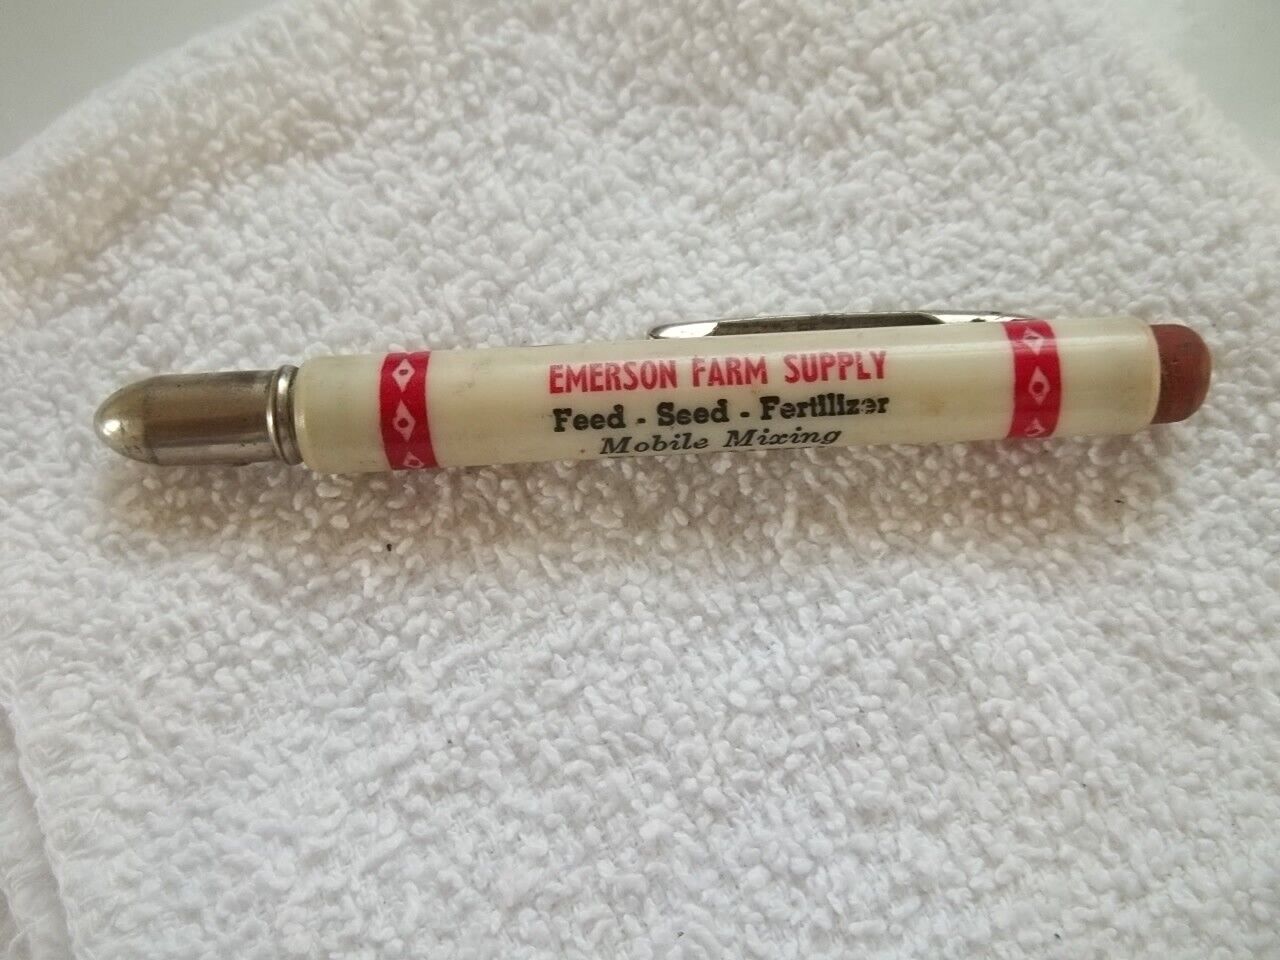 Emerson Farm Supply Purina Feed Seed & Fertilizer Emerson Iowa Bullet Pencil #25